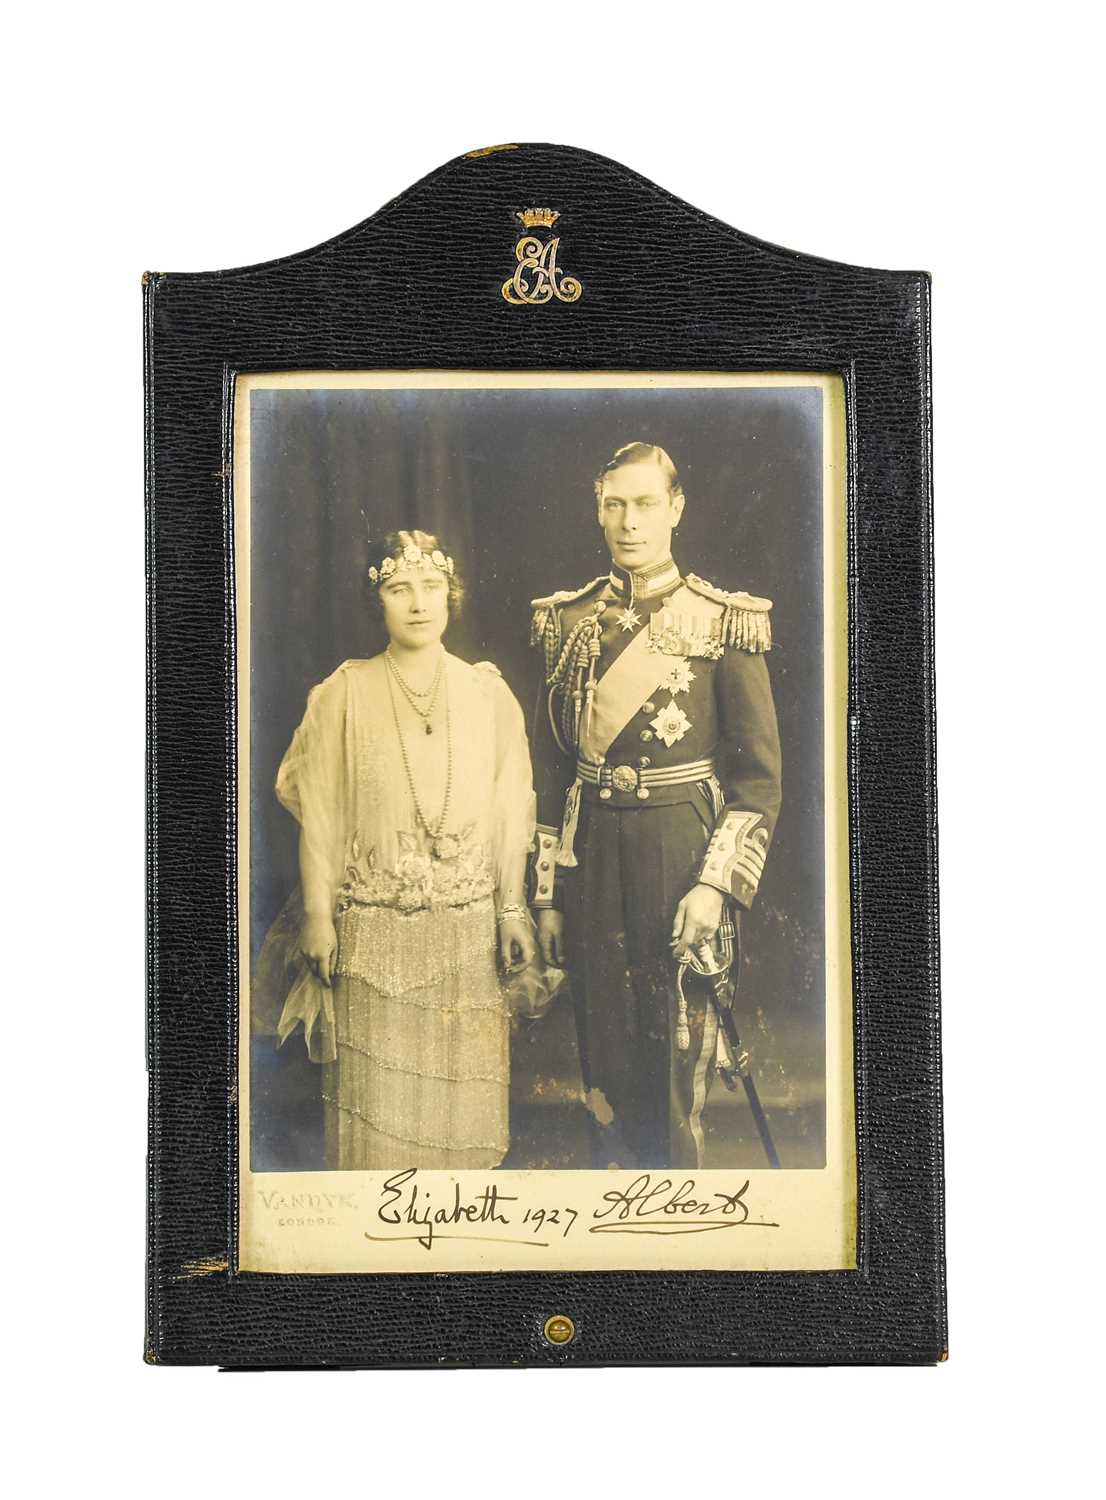 Lot 195 - George VI & Elizabeth. Signed portrait photograph, 1927